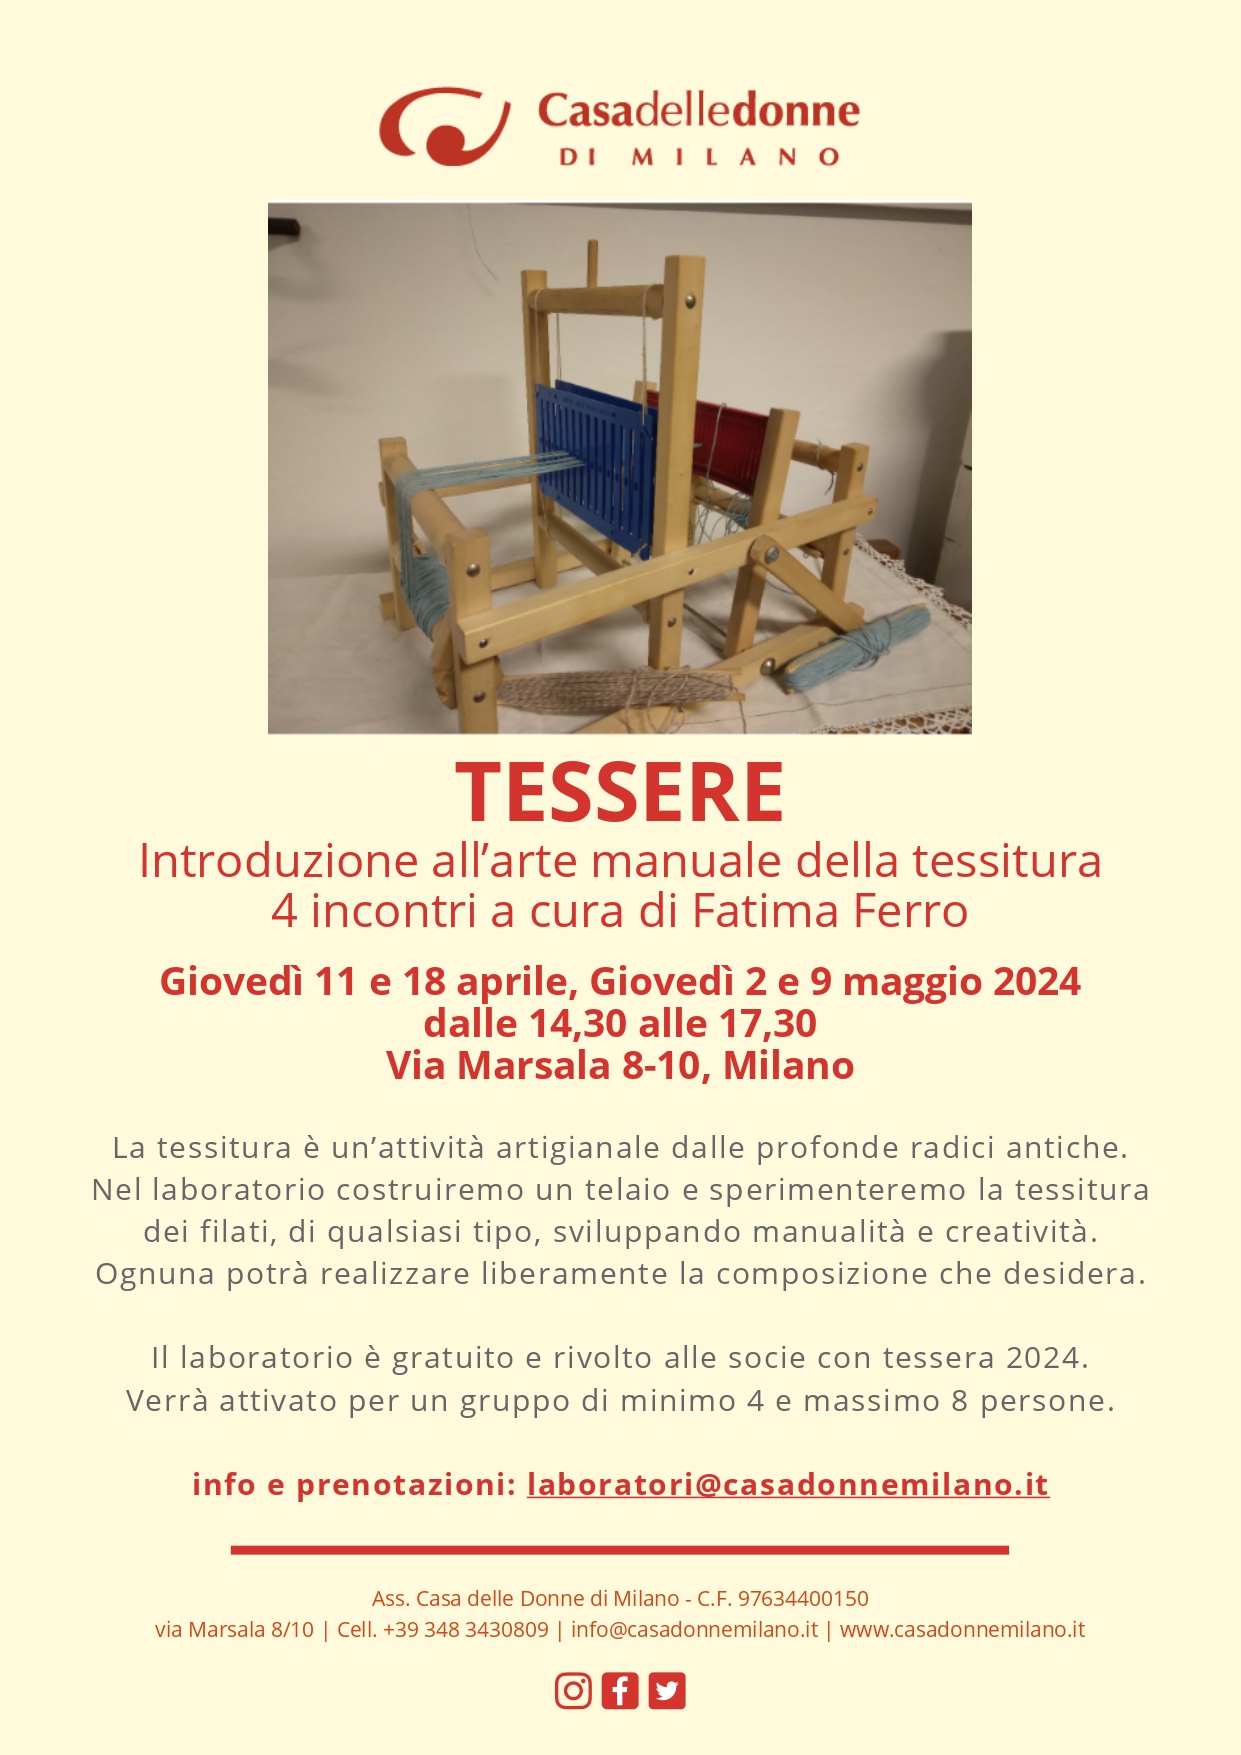 Laboratorio di tessitura "TESSERE" @ Casa delle Donne di Milano